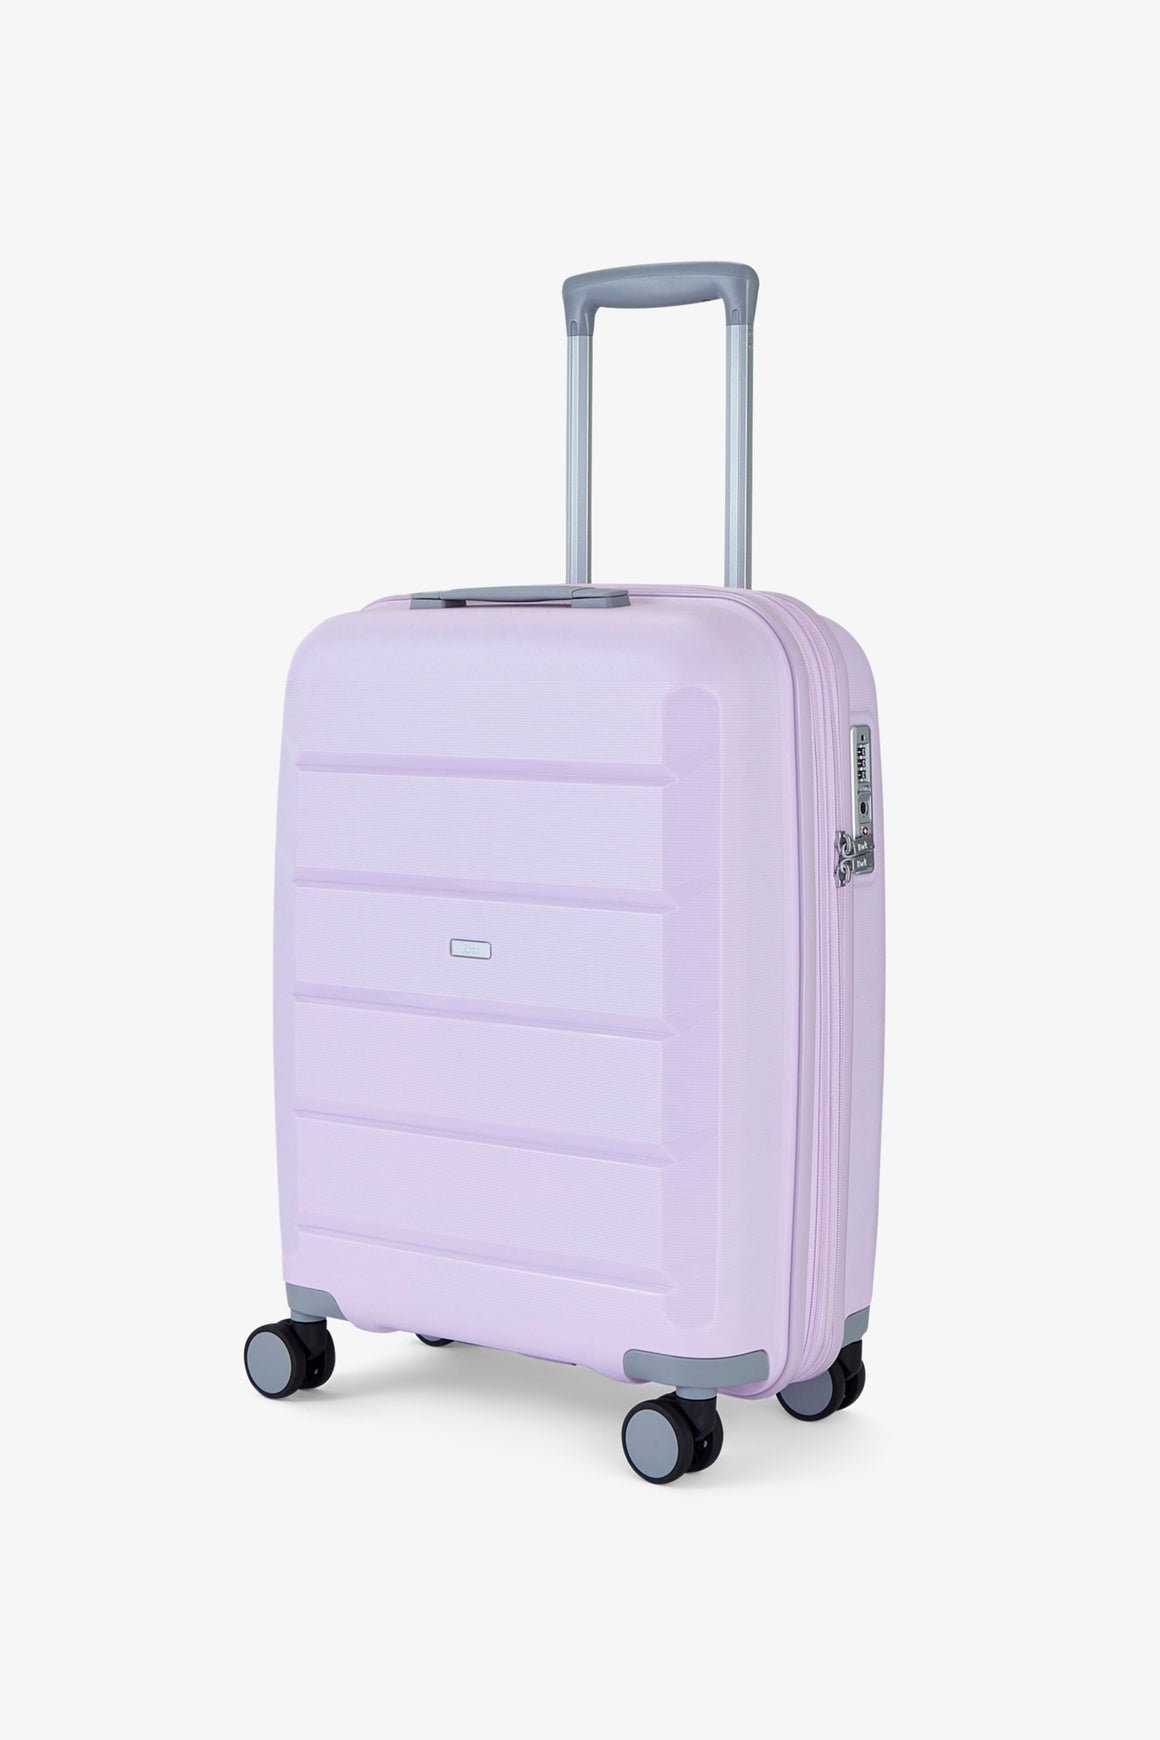 Tulum Small Suitcase